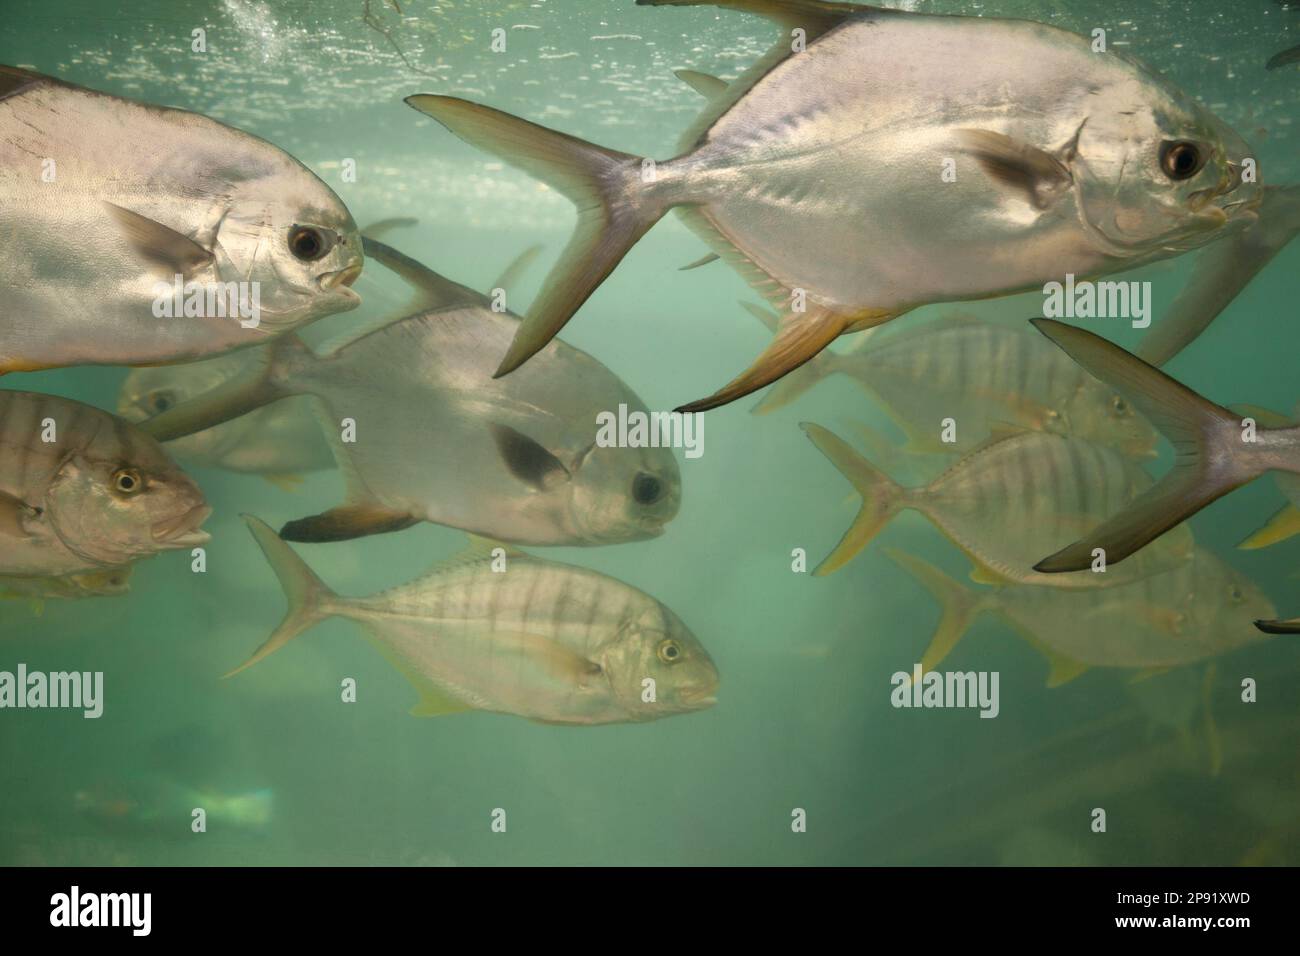 Gruppe von Carangidae Fische in einem Aquarium. Südchinesische Meer Unterwasserwelt Arten in Vietnam Stockfoto